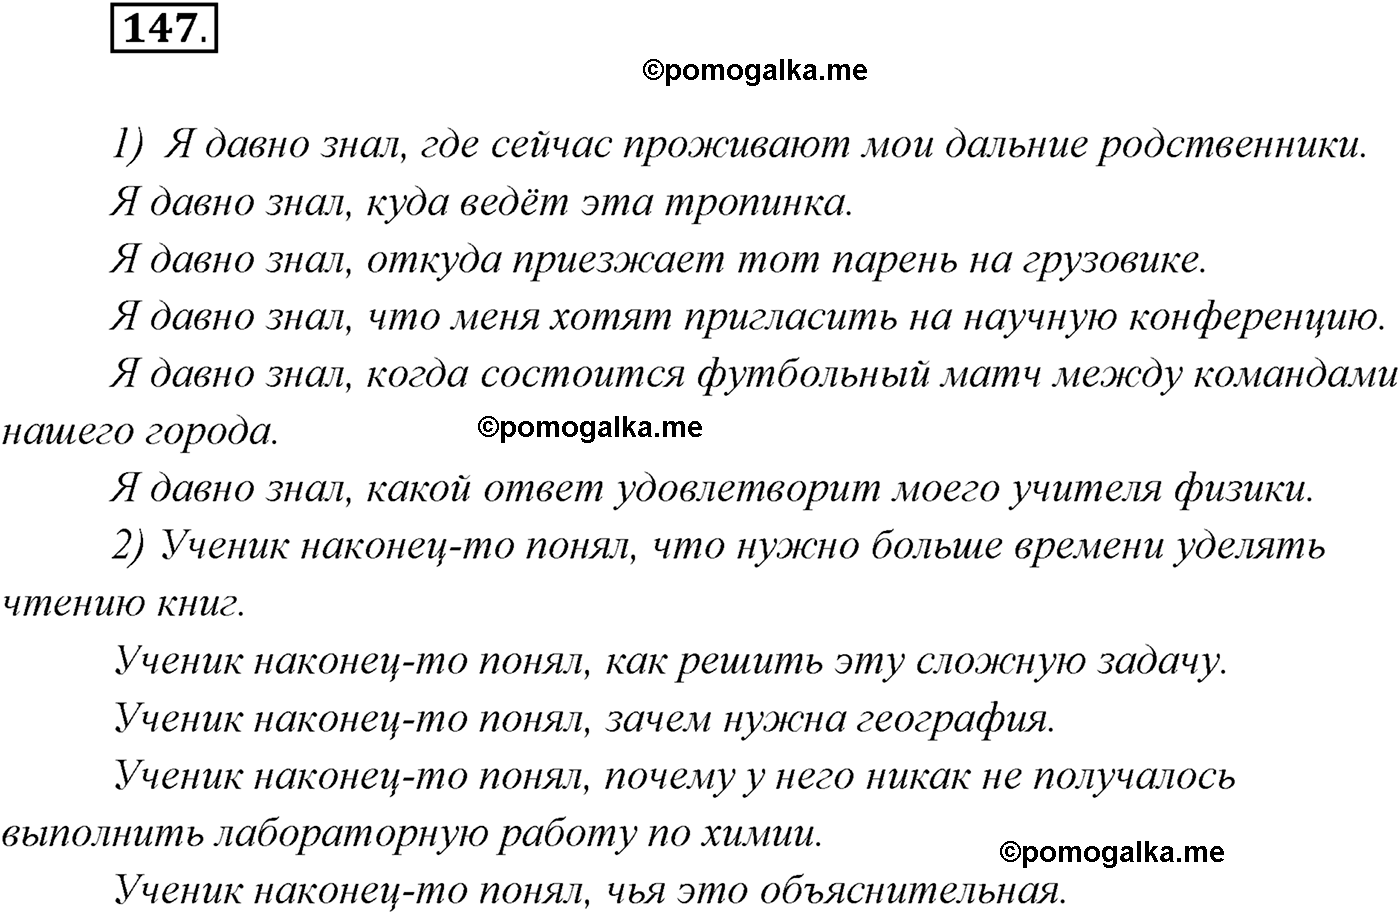 члены сказа в белорусском языке фото 73